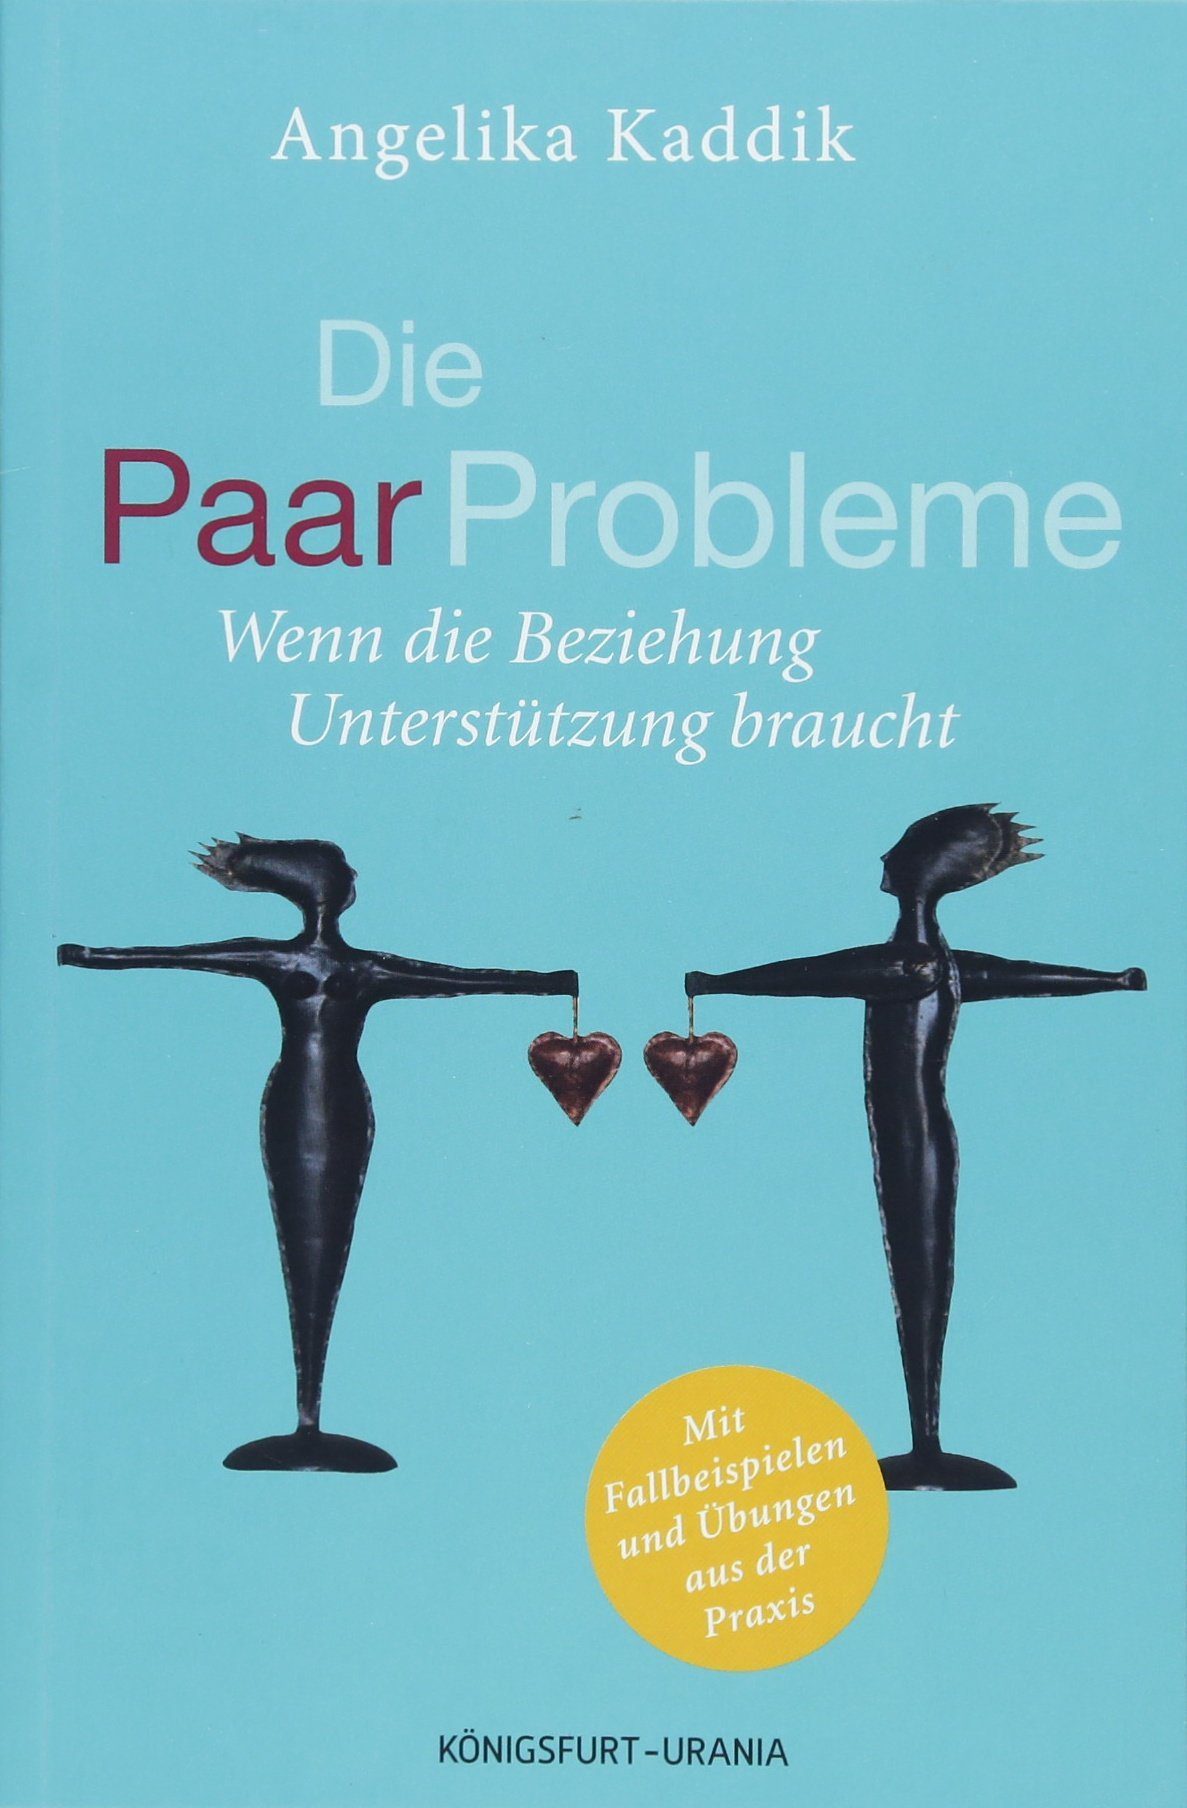 Buch: Die PaarProbleme: Wenn die Beziehung Unterstützung braucht (Paartherapie, Beziehung retten, Paarberatung, Paare, Ehe, Beziehung, Hilfe) - Amazon